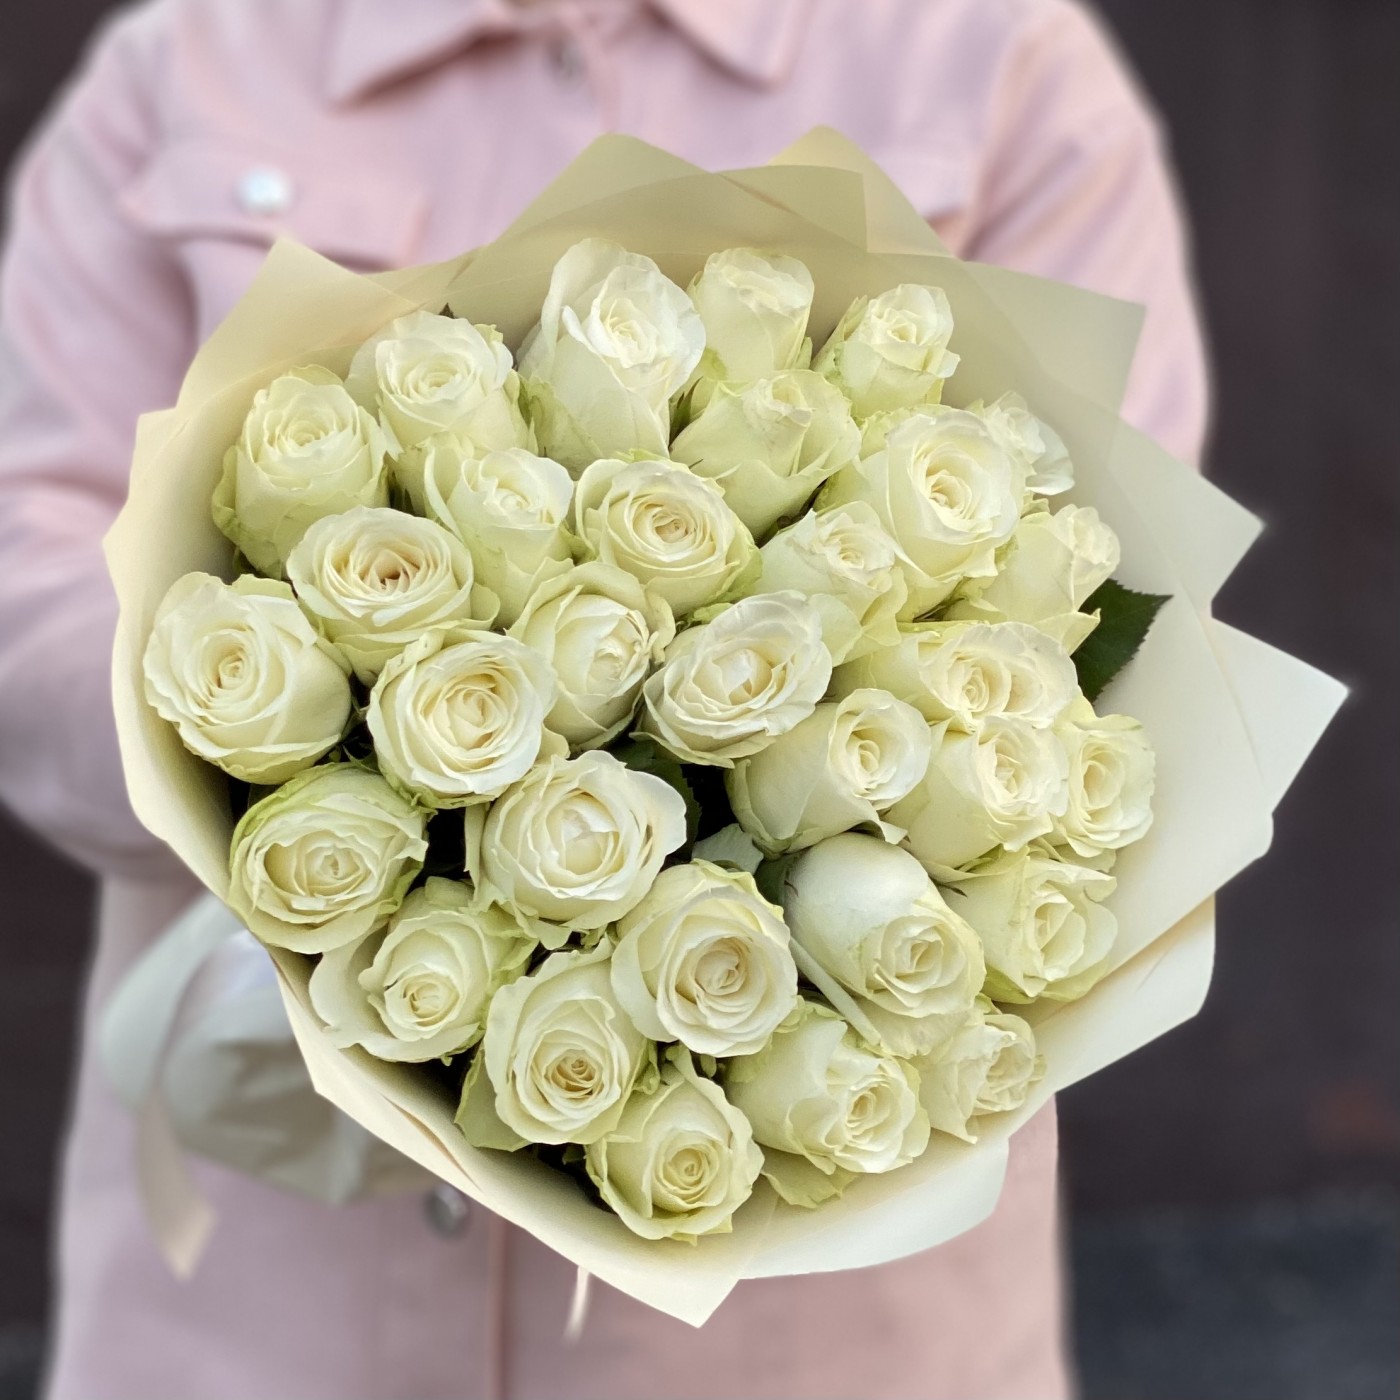 Все о белых розах - описание лучших больших кустов роз